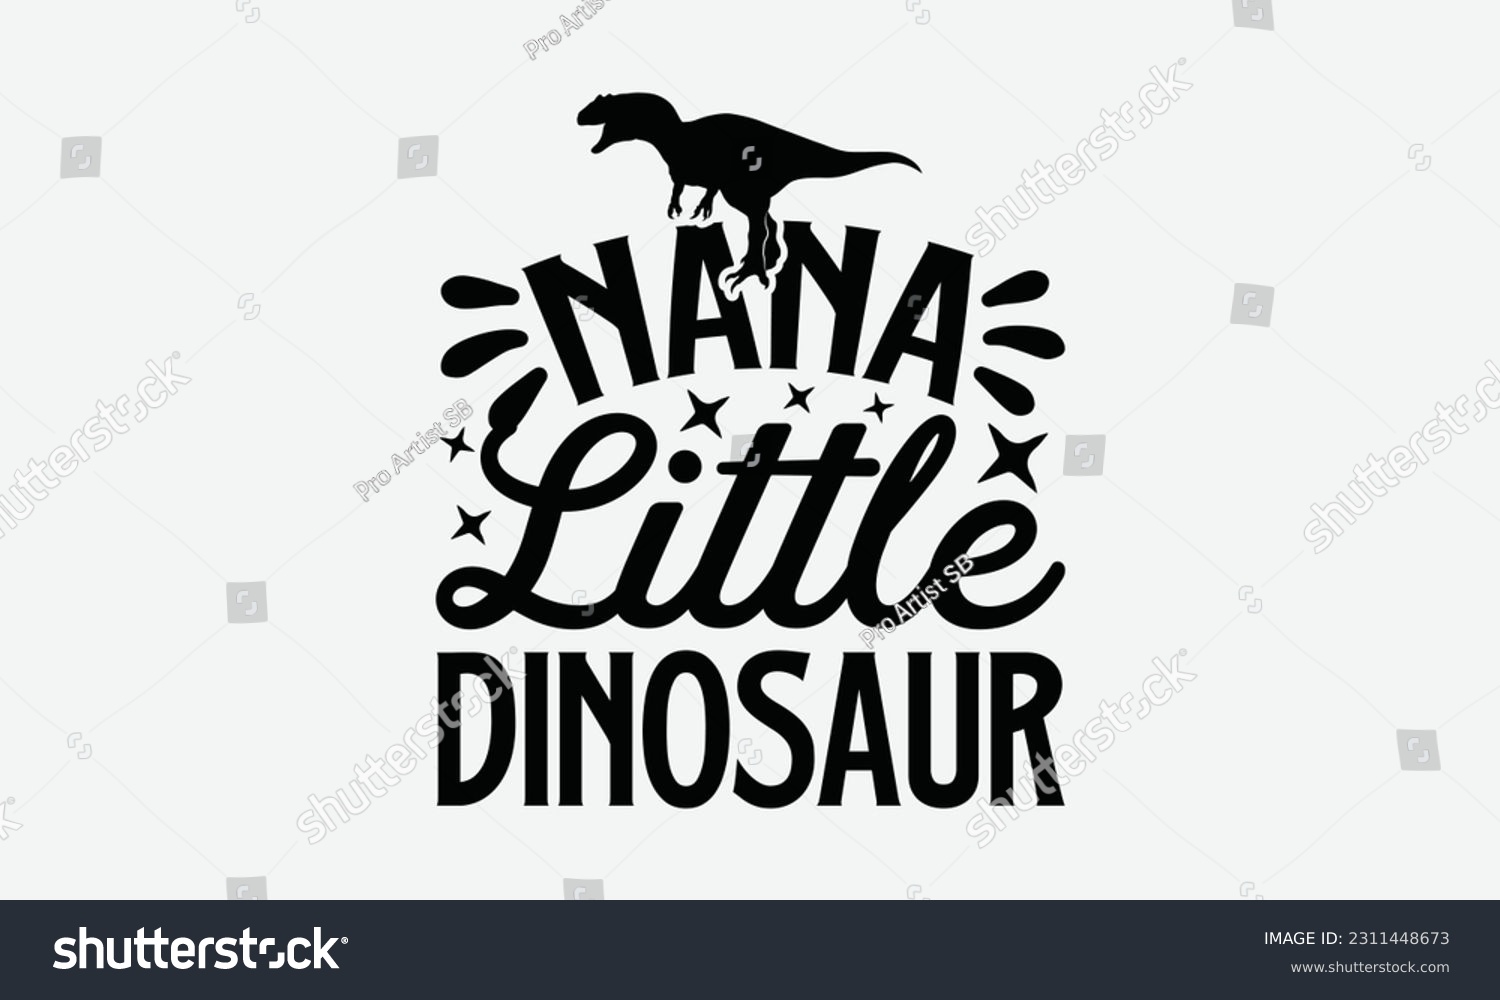 SVG of Nana Little Dinosaur - Dinosaur SVG Design, Hand Lettering Phrase Isolated On White Background, Modern Calligraphy Vector, Eps 10. svg